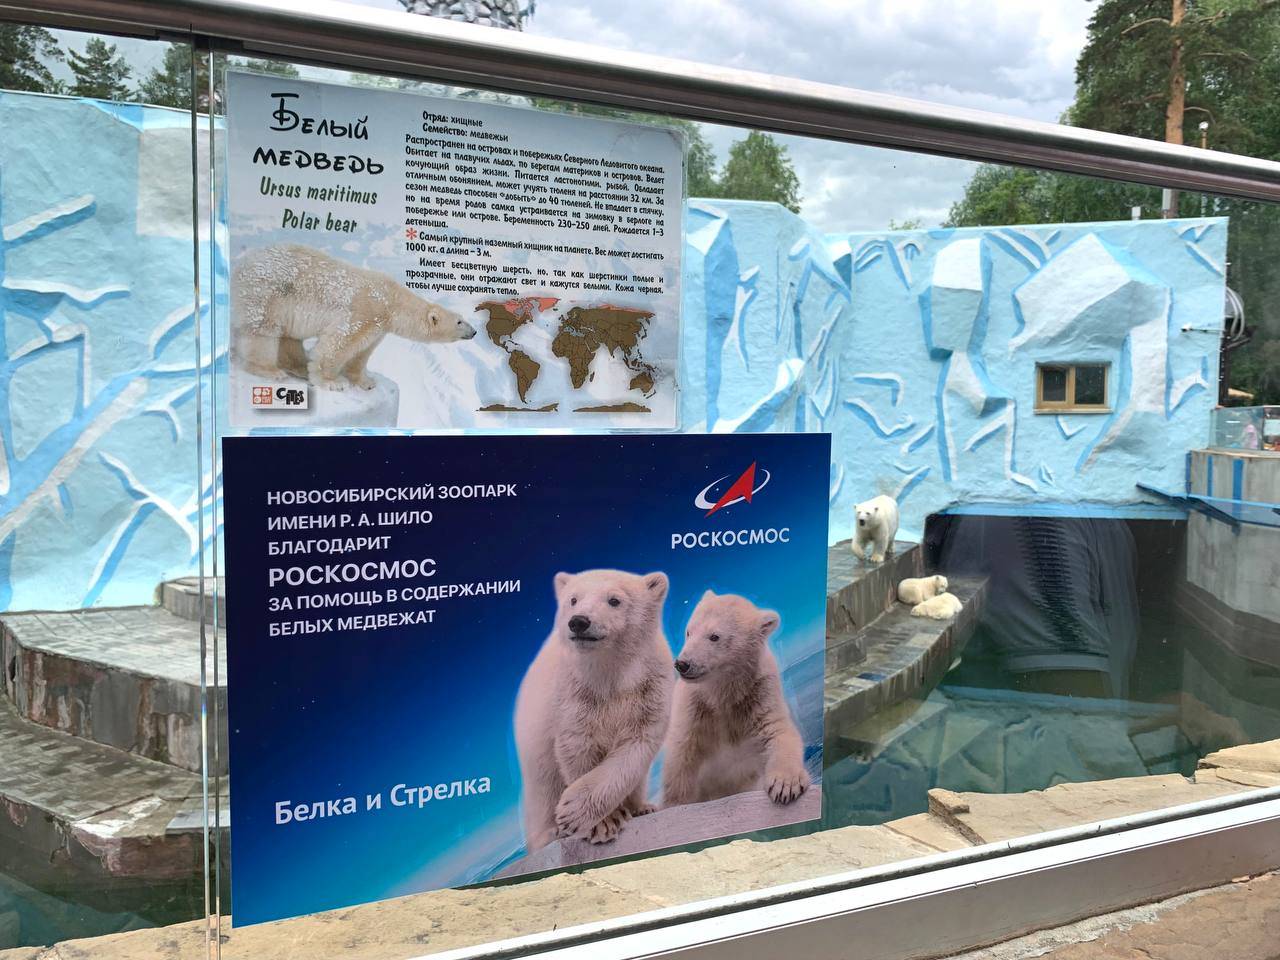 Роскосмос взял кураторство над белыми медвежатами Белкой и Стрелкой из Новосибирского зоопарка